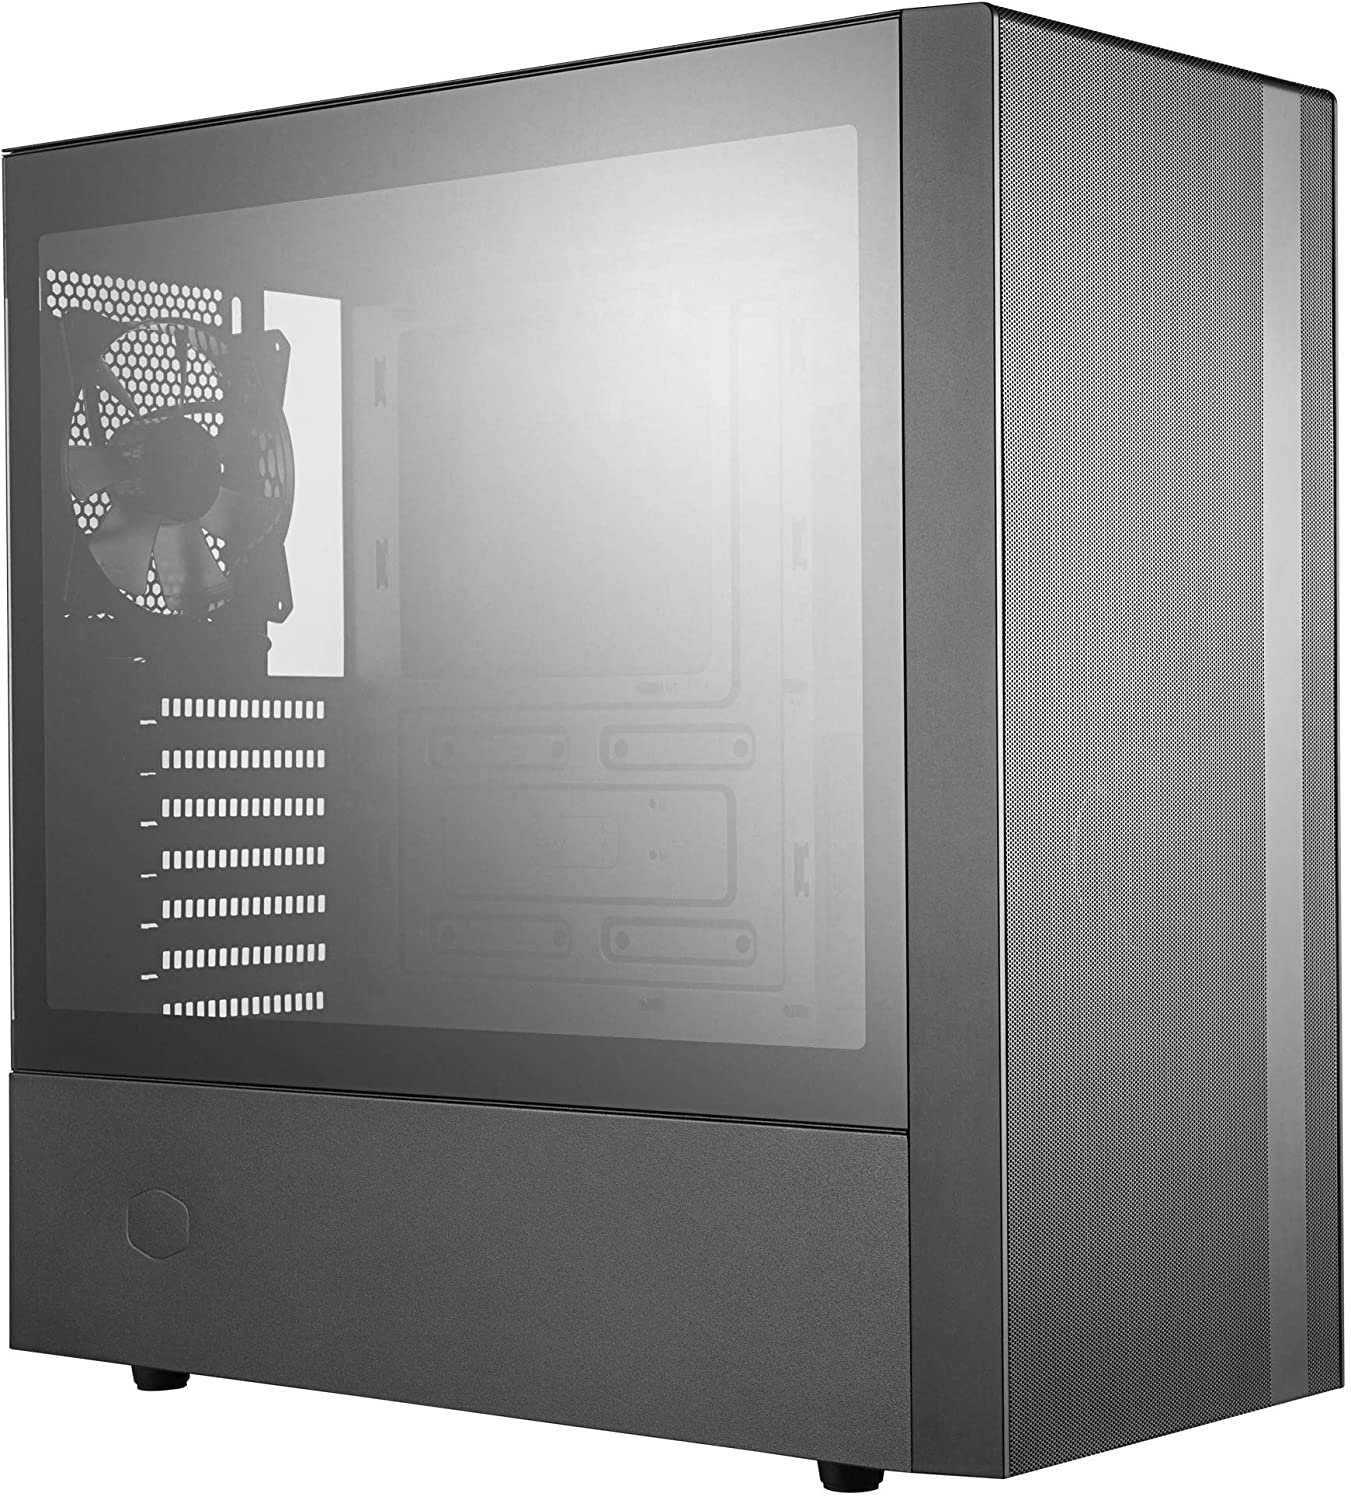 8 Case - Best $800 PC Build 2022